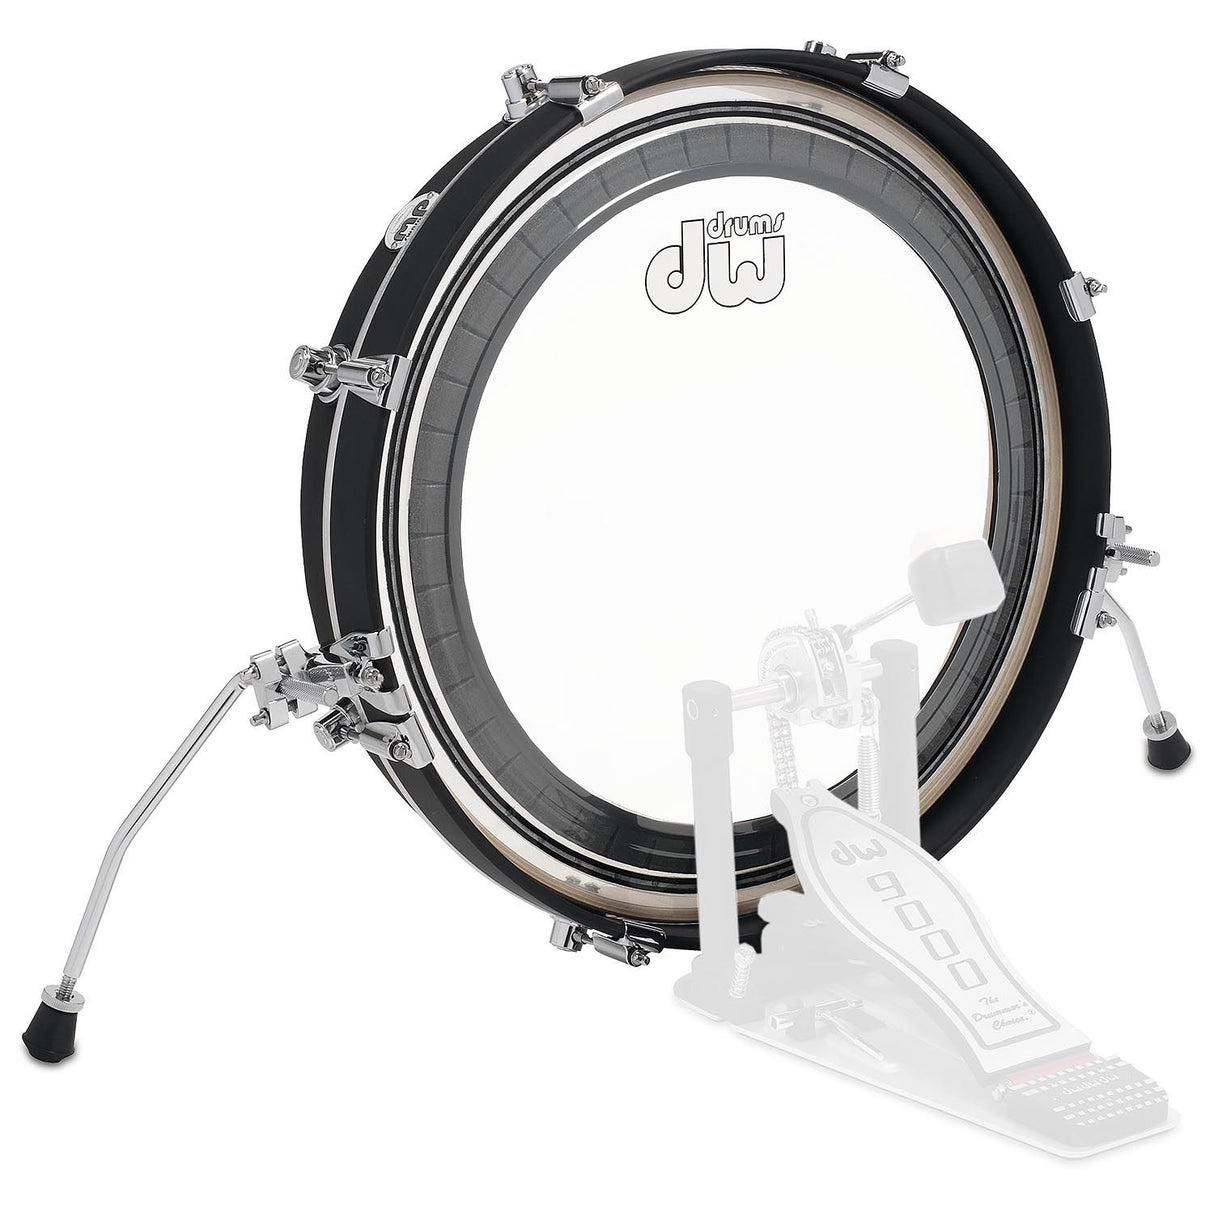 DW Design Series "Pancake" Bass Drum in Flat Black